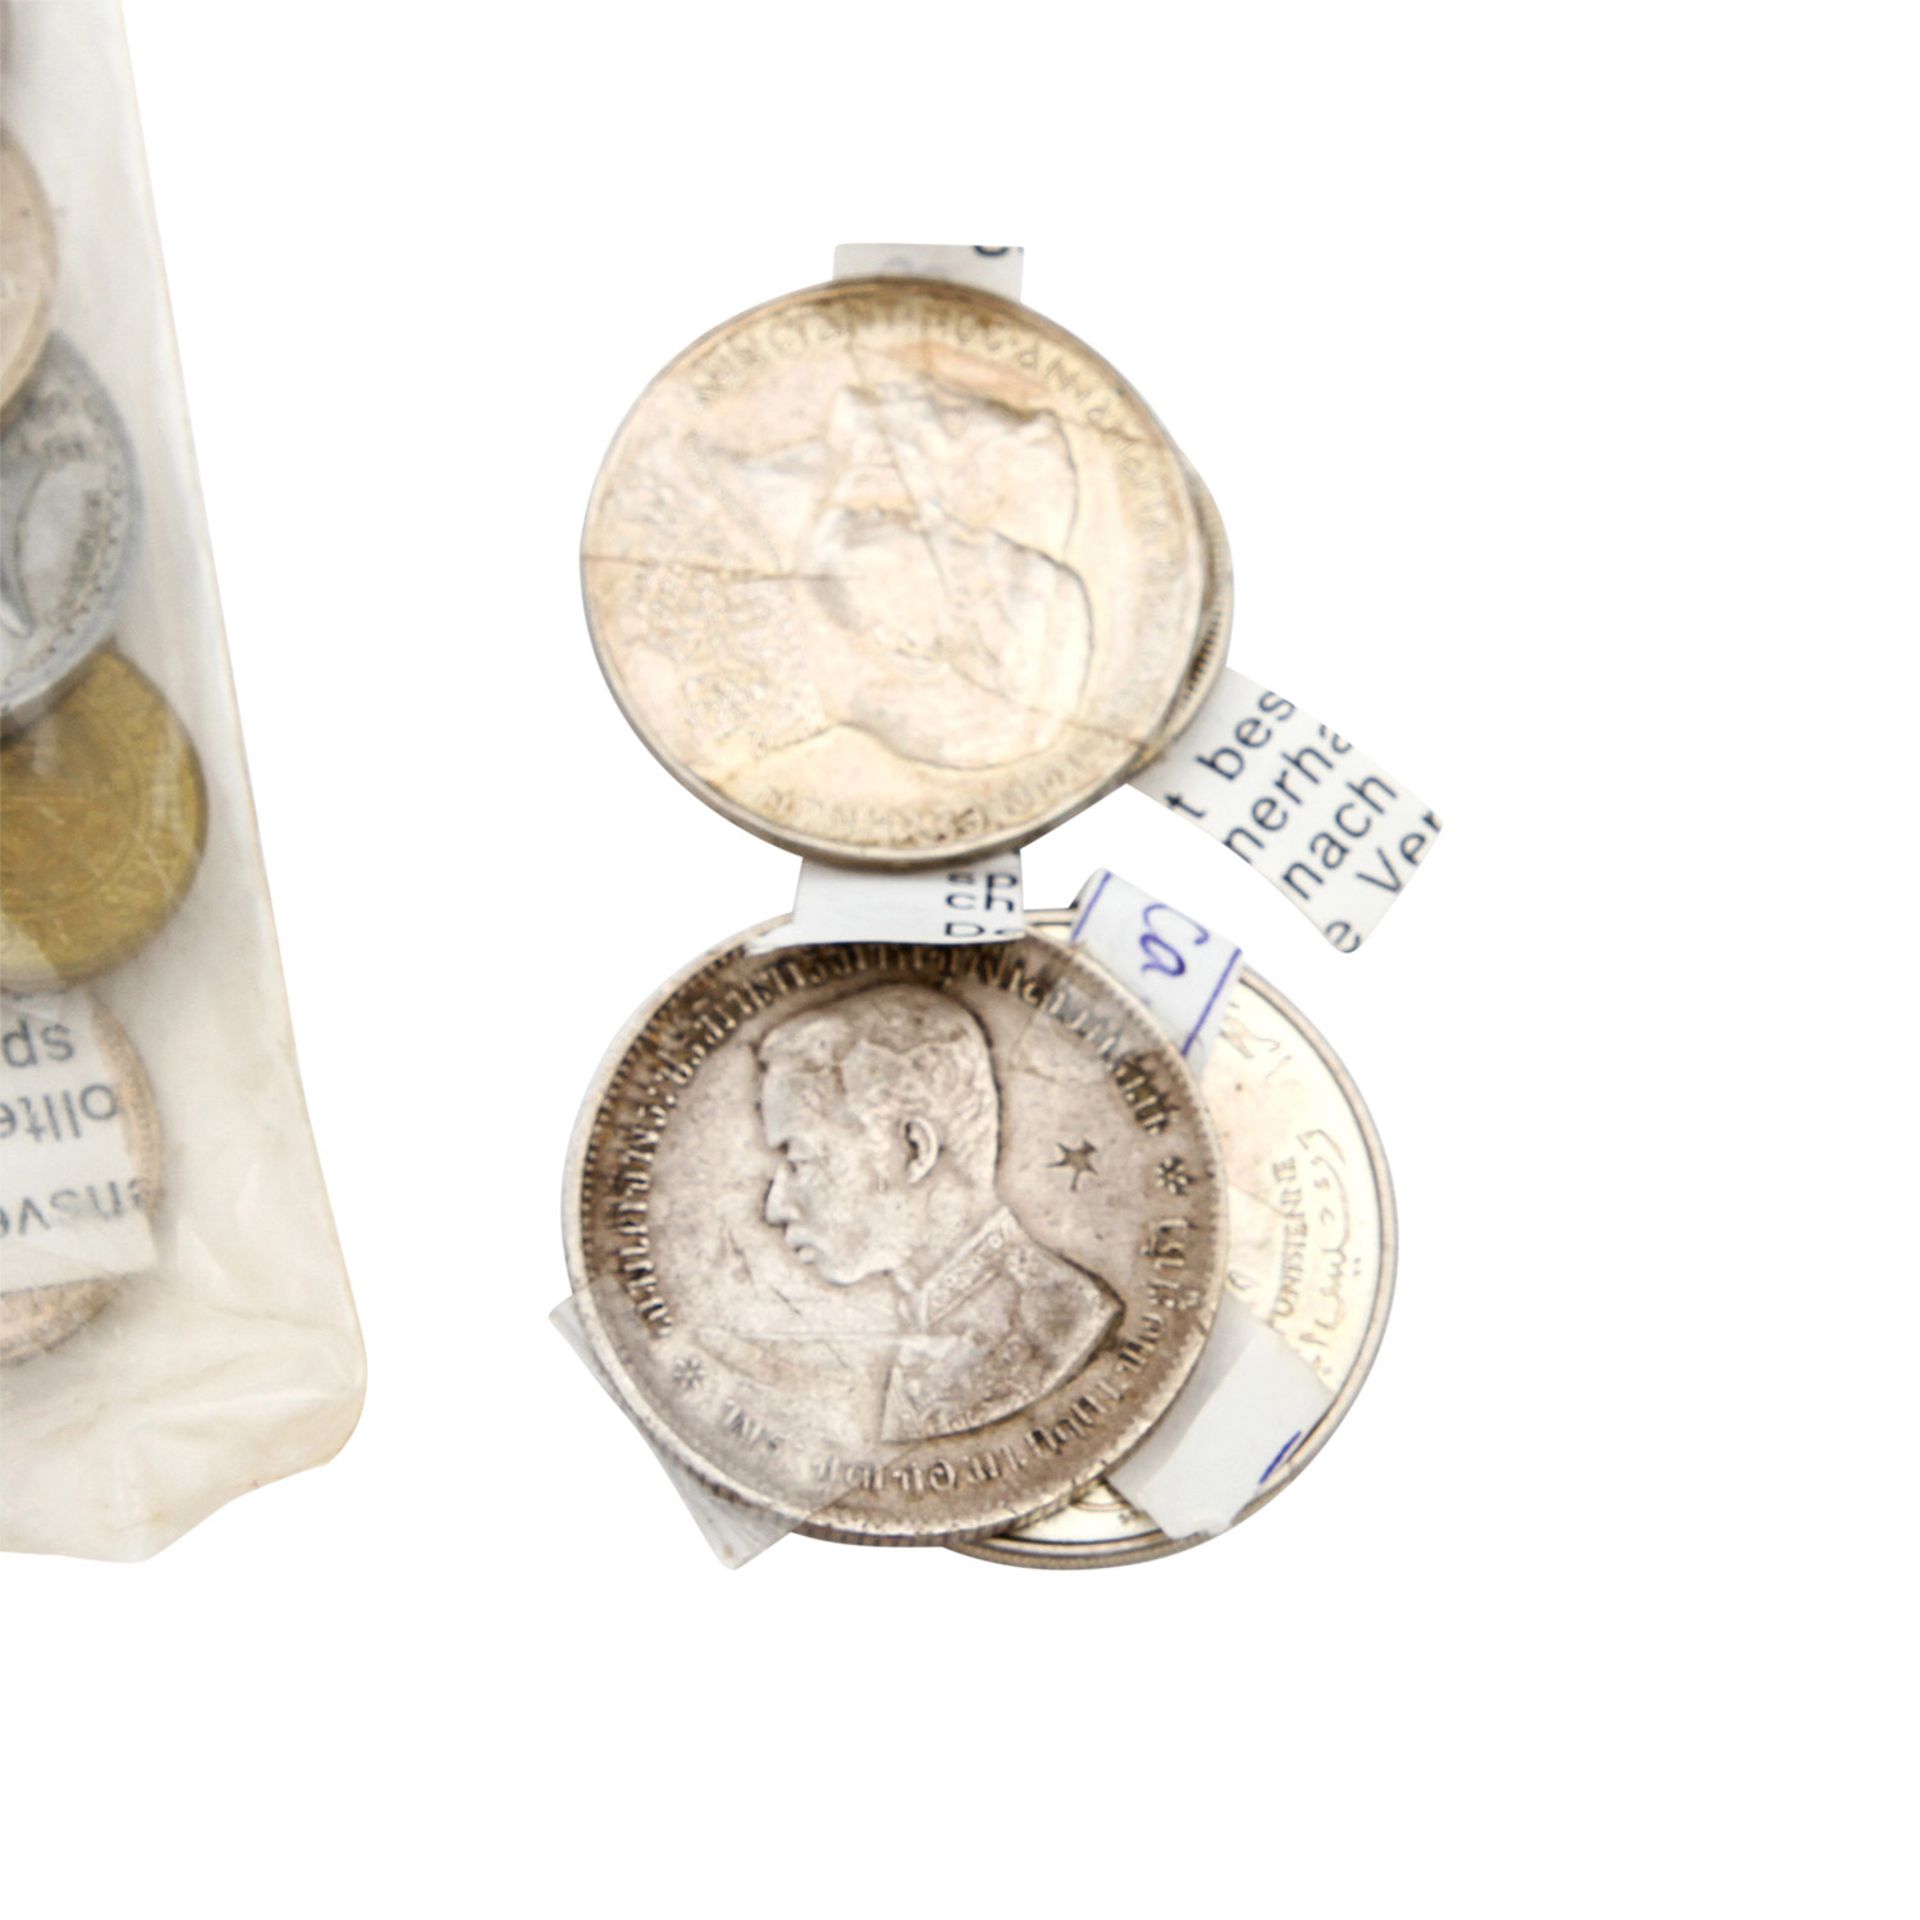 Konvolut - Diverse Silbermünzen, darunter auch einige Unzen, Medaillen, Kursgeld, Exoten. - Bild 7 aus 7